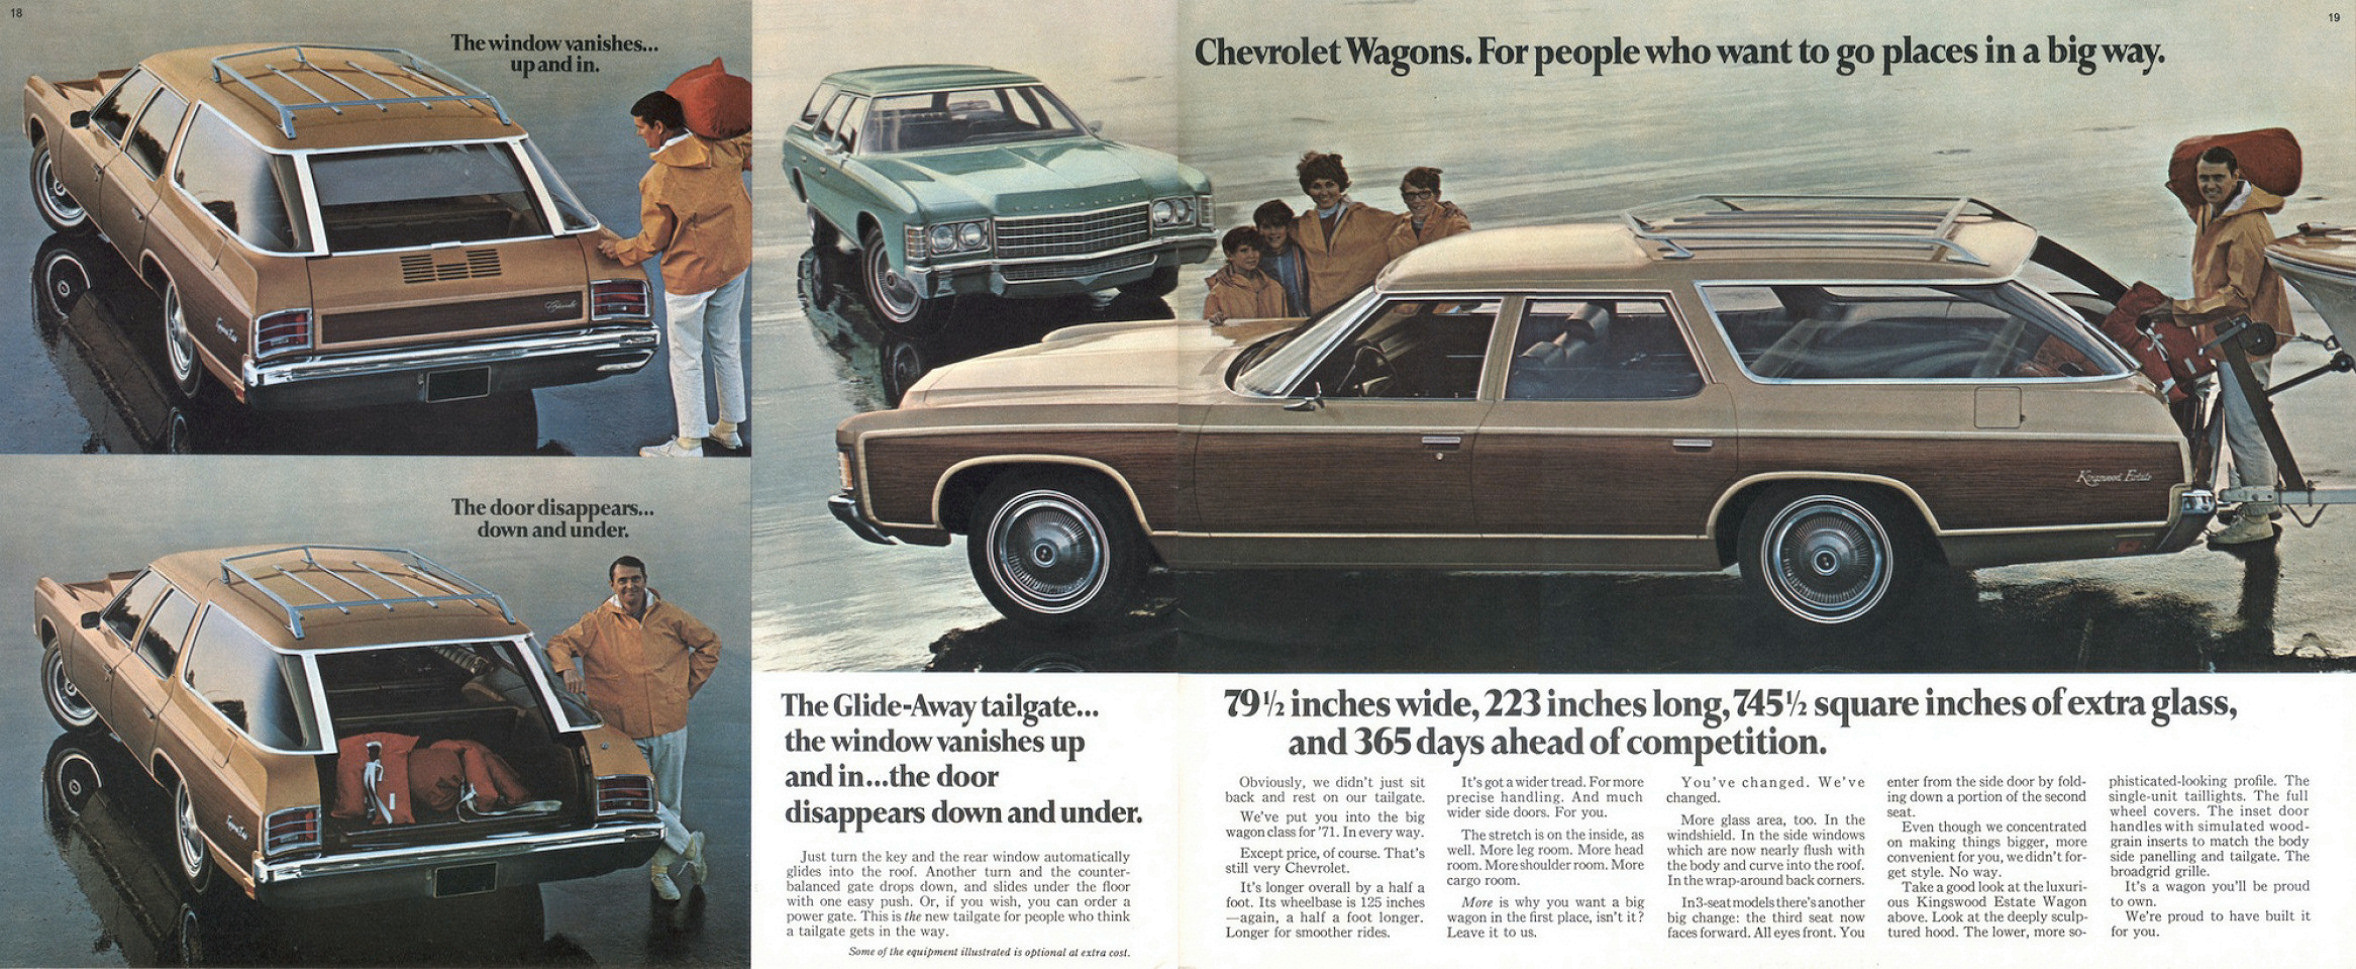 1971_Chevrolet_Full_Size_Cdn-18-19